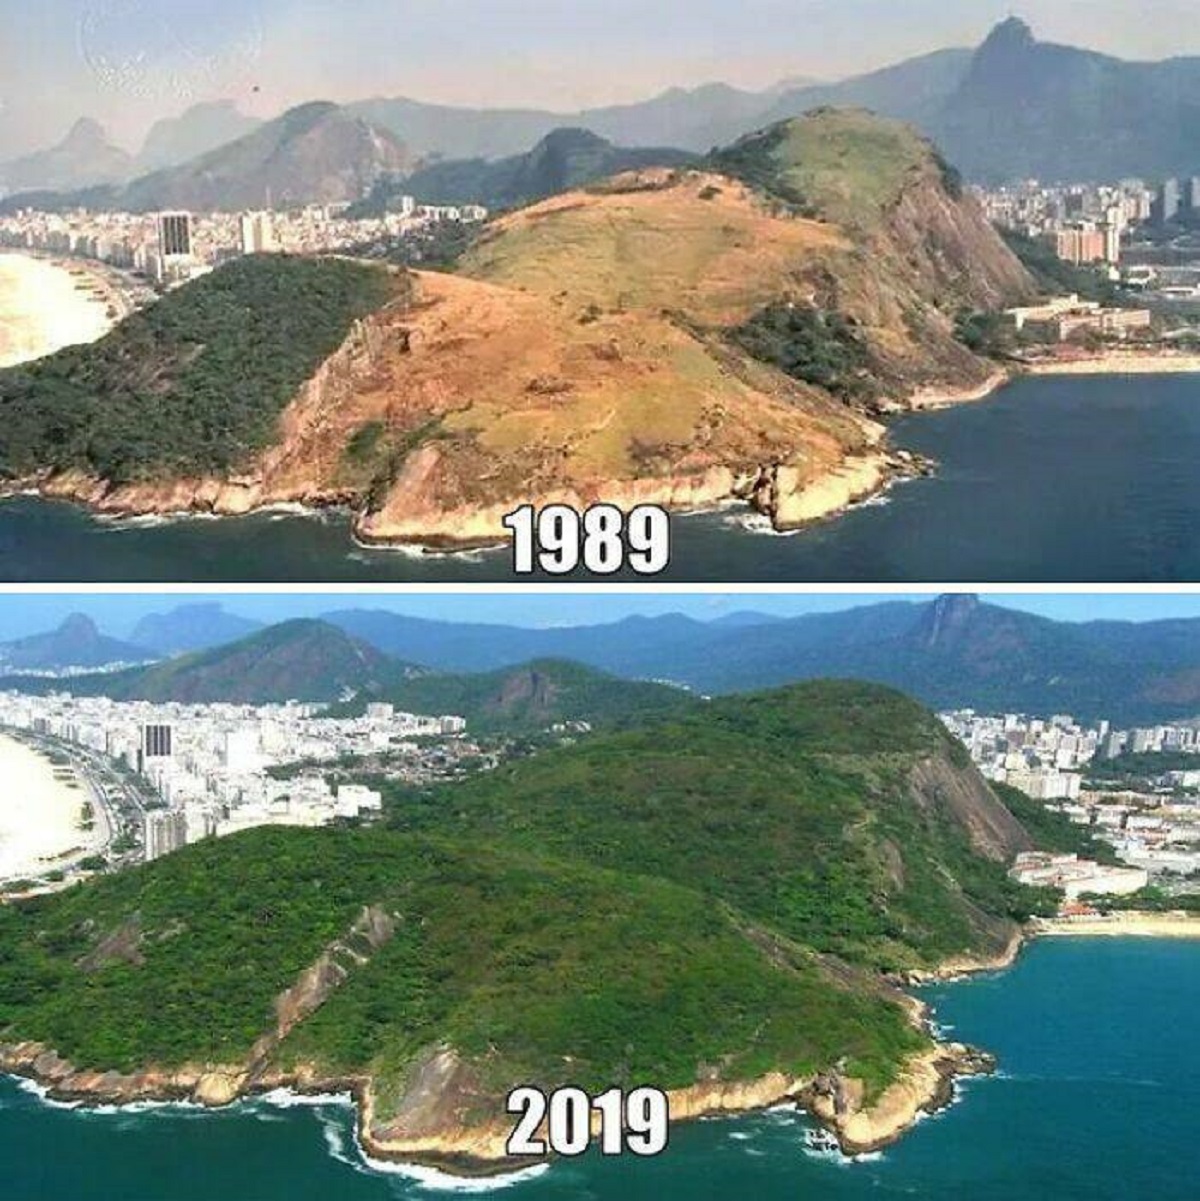 "Rio De Janeiro's Reforestation"